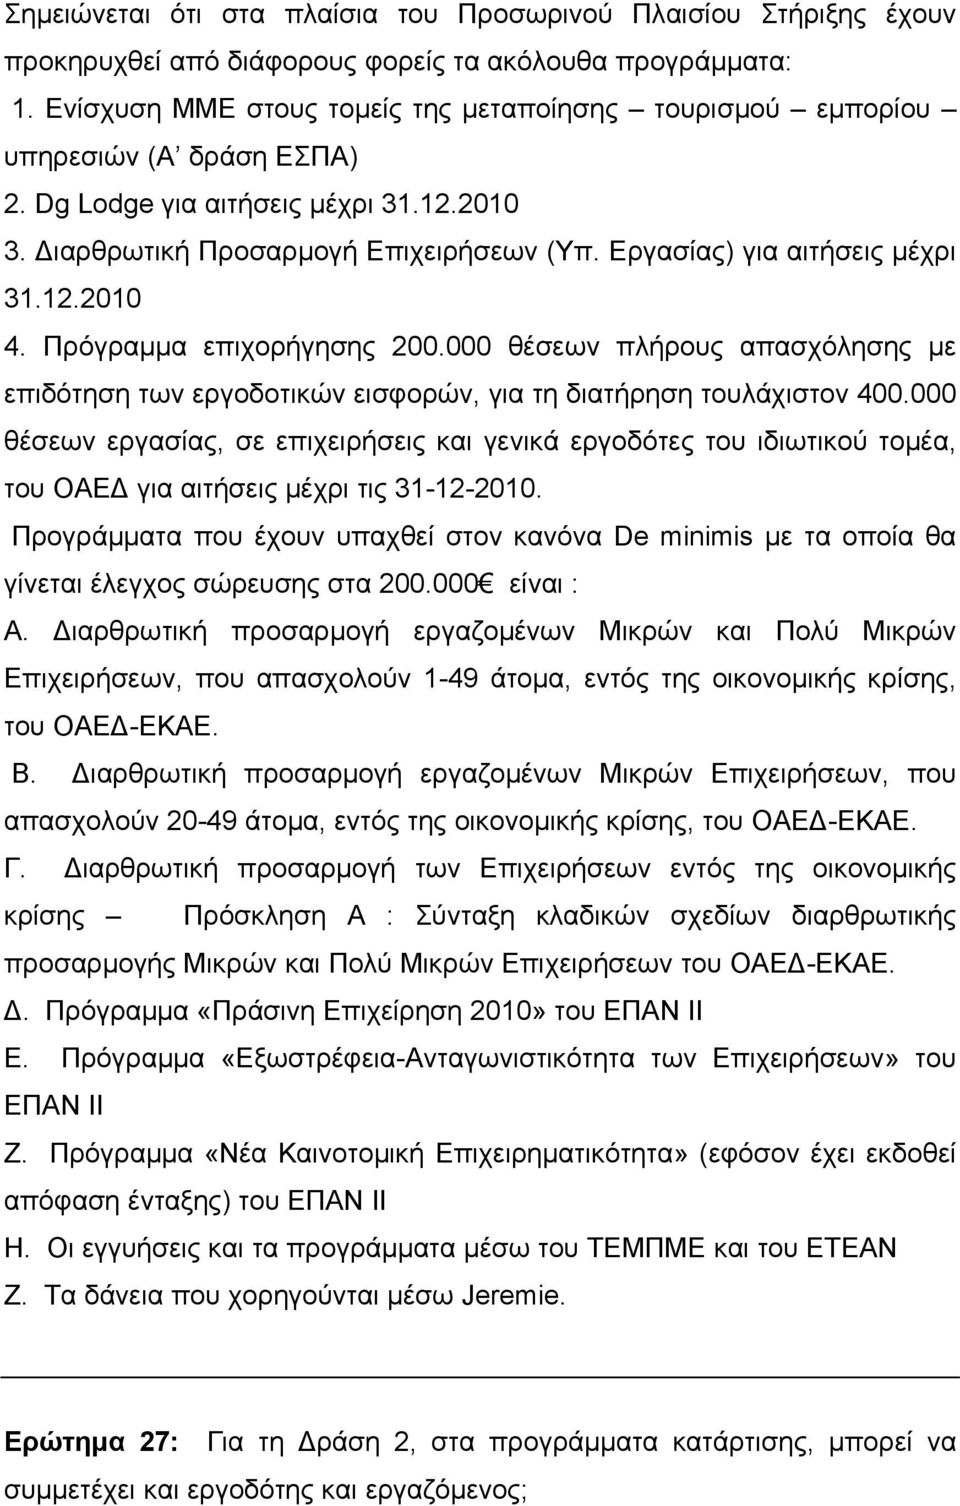 Εργασίας) για αιτήσεις µέχρι 31.12.2010 4. Πρόγραµµα επιχορήγησης 200.000 θέσεων πλήρους απασχόλησης µε επιδότηση των εργοδοτικών εισφορών, για τη διατήρηση τουλάχιστον 400.